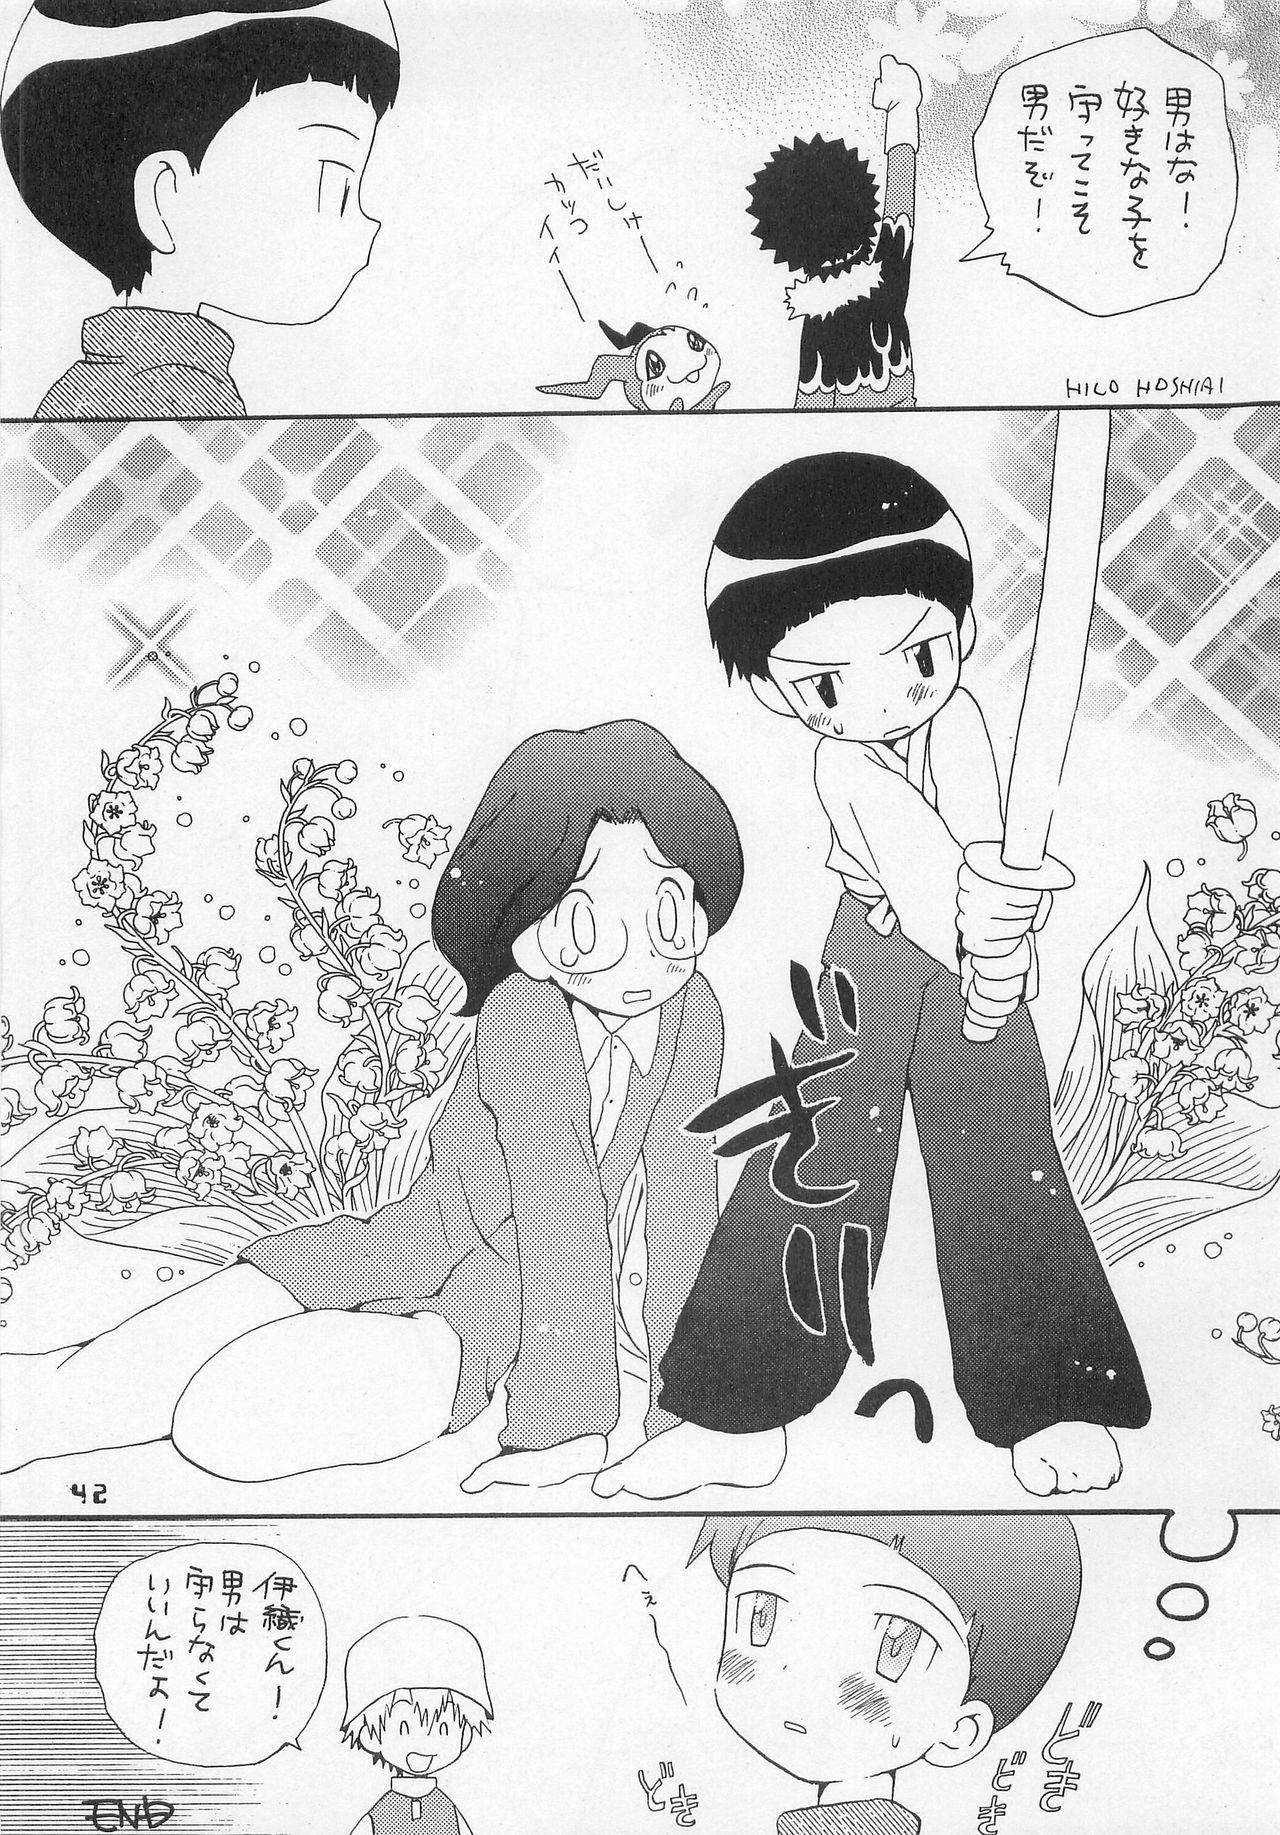 (HaruCC6) [Haniwa Mania, Kuru Guru DNA (Pon Takahanada, Hoshiai Hiro)] Jogress Daihyakka (Digimon Adventure 02) page 41 full